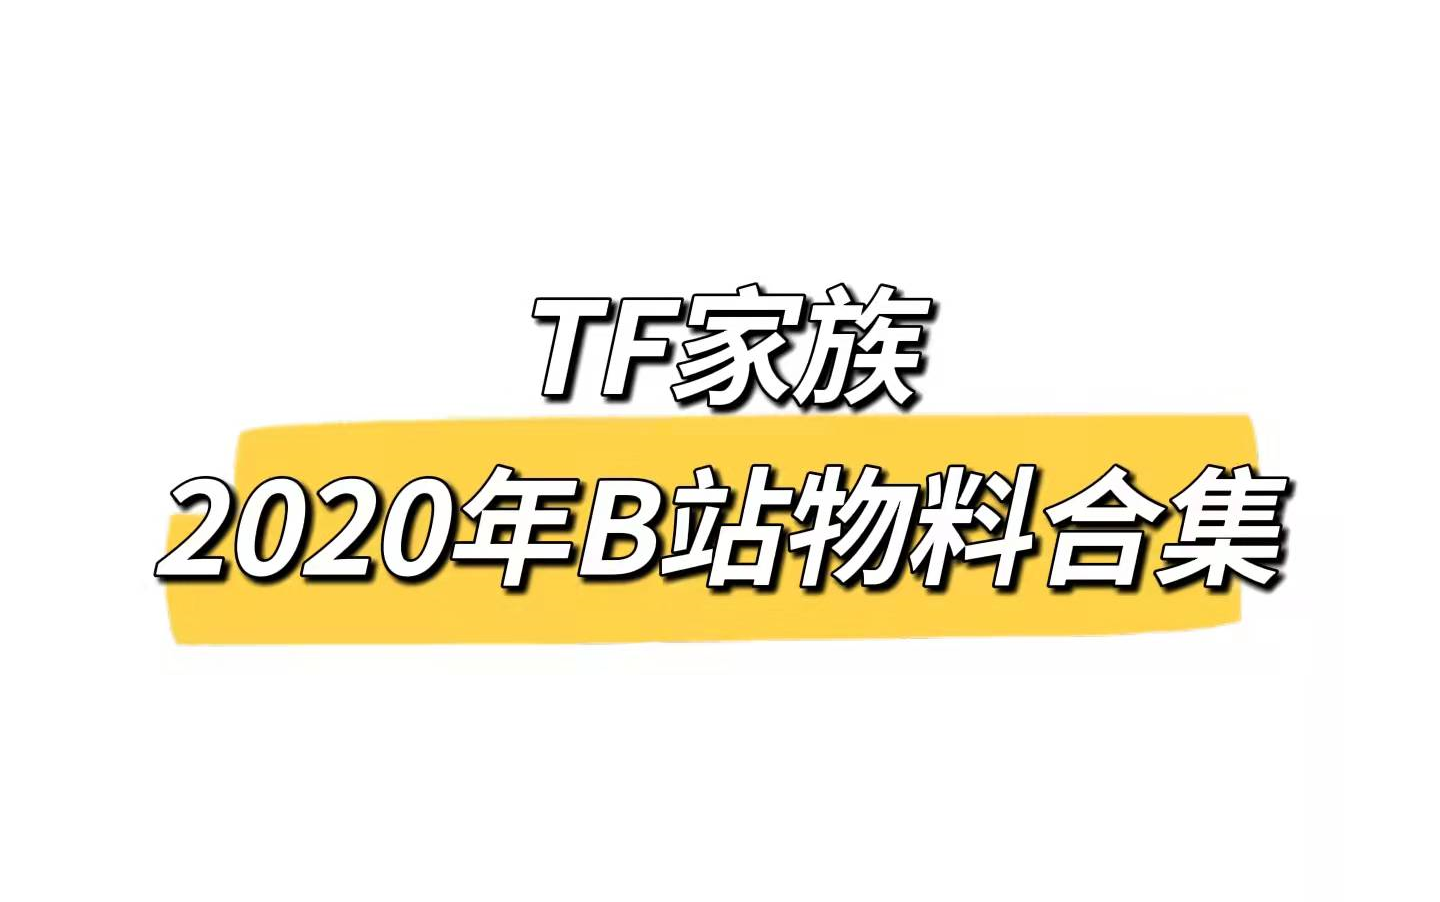 【TF家族】2020年B站物料合集